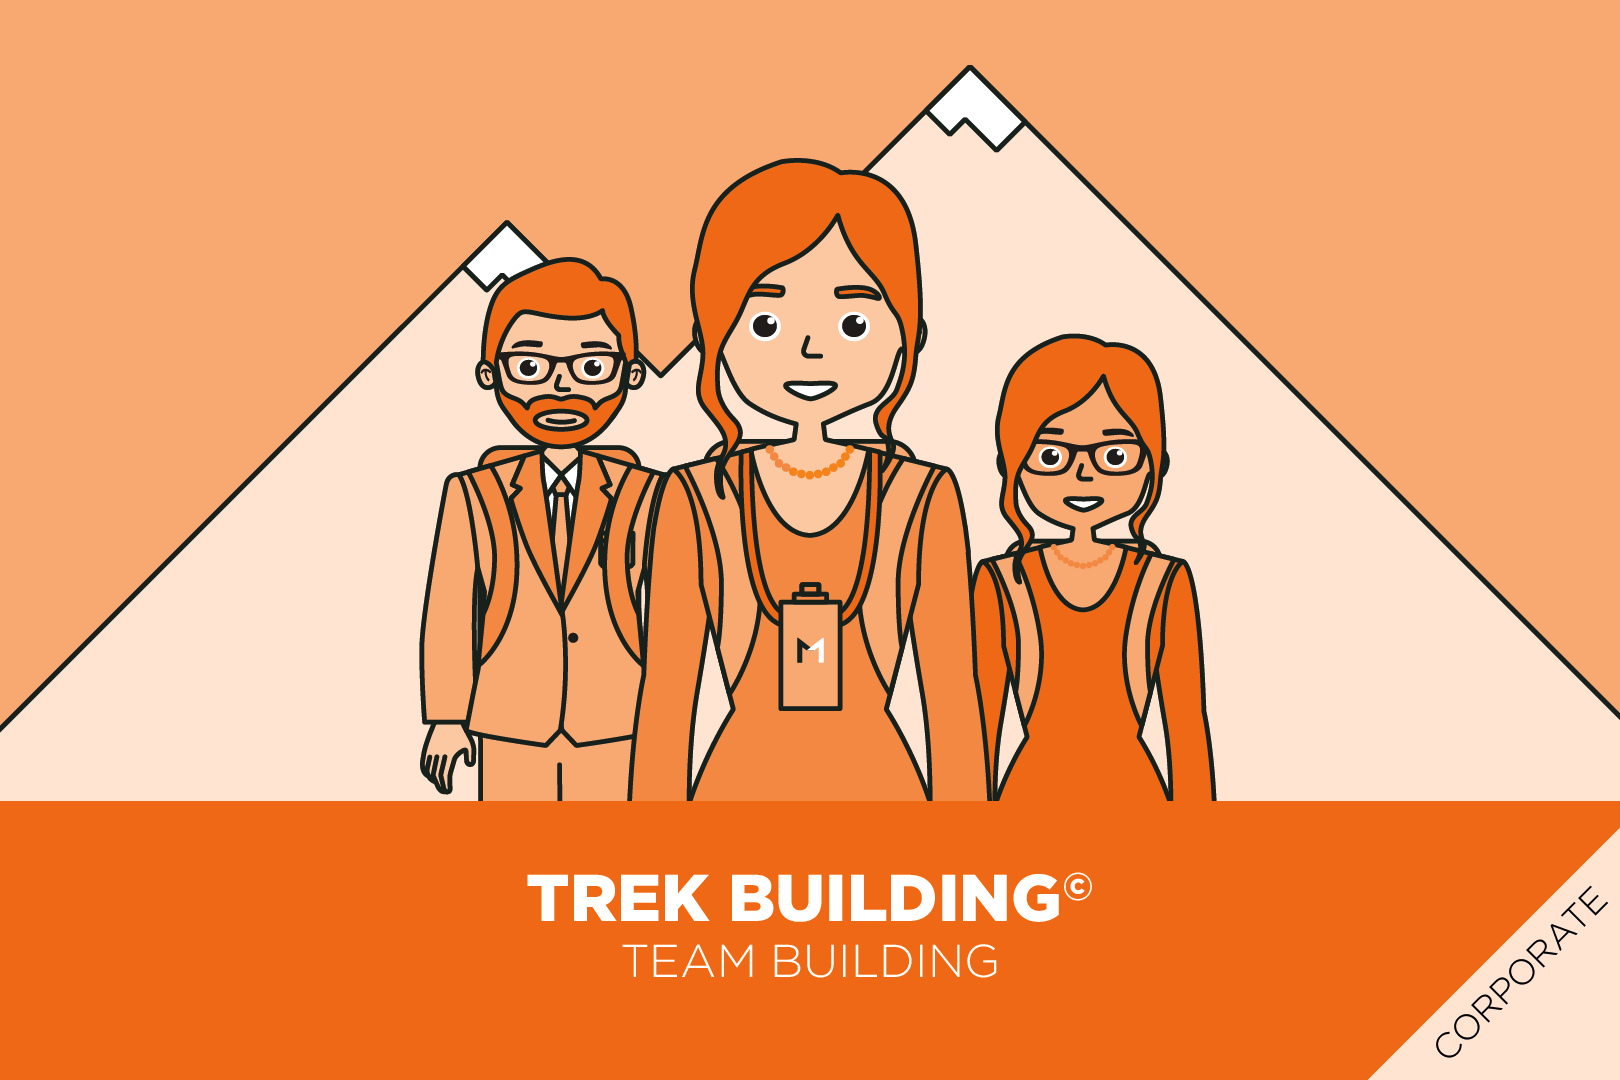 Trek_Building_MultiOlistica_Business_Training